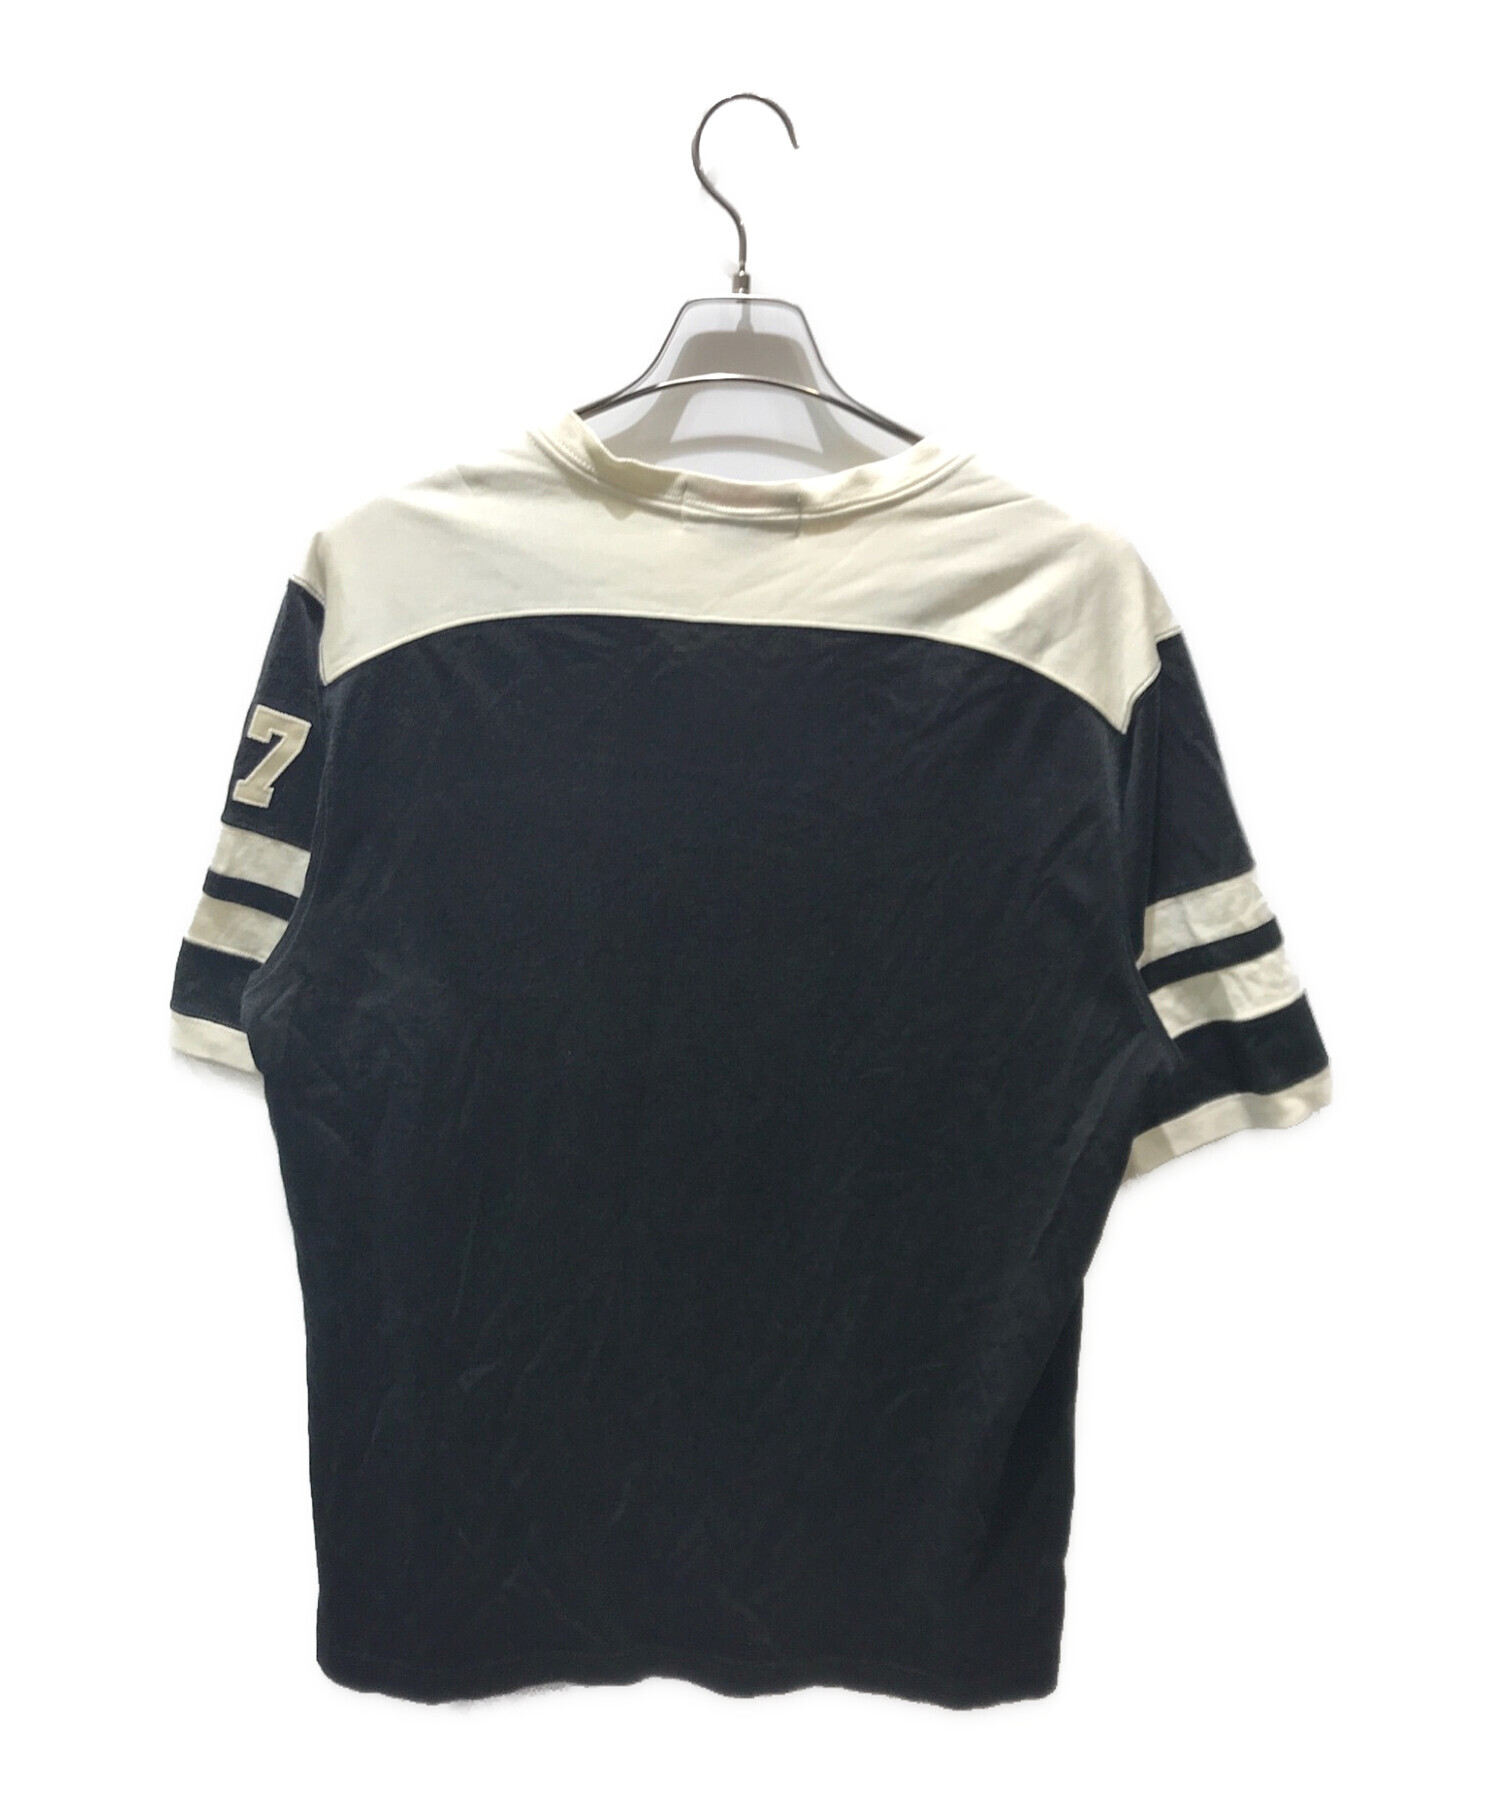 POLO SPORT (ポロスポーツ) Tシャツ ブラック×ホワイト サイズ:XL